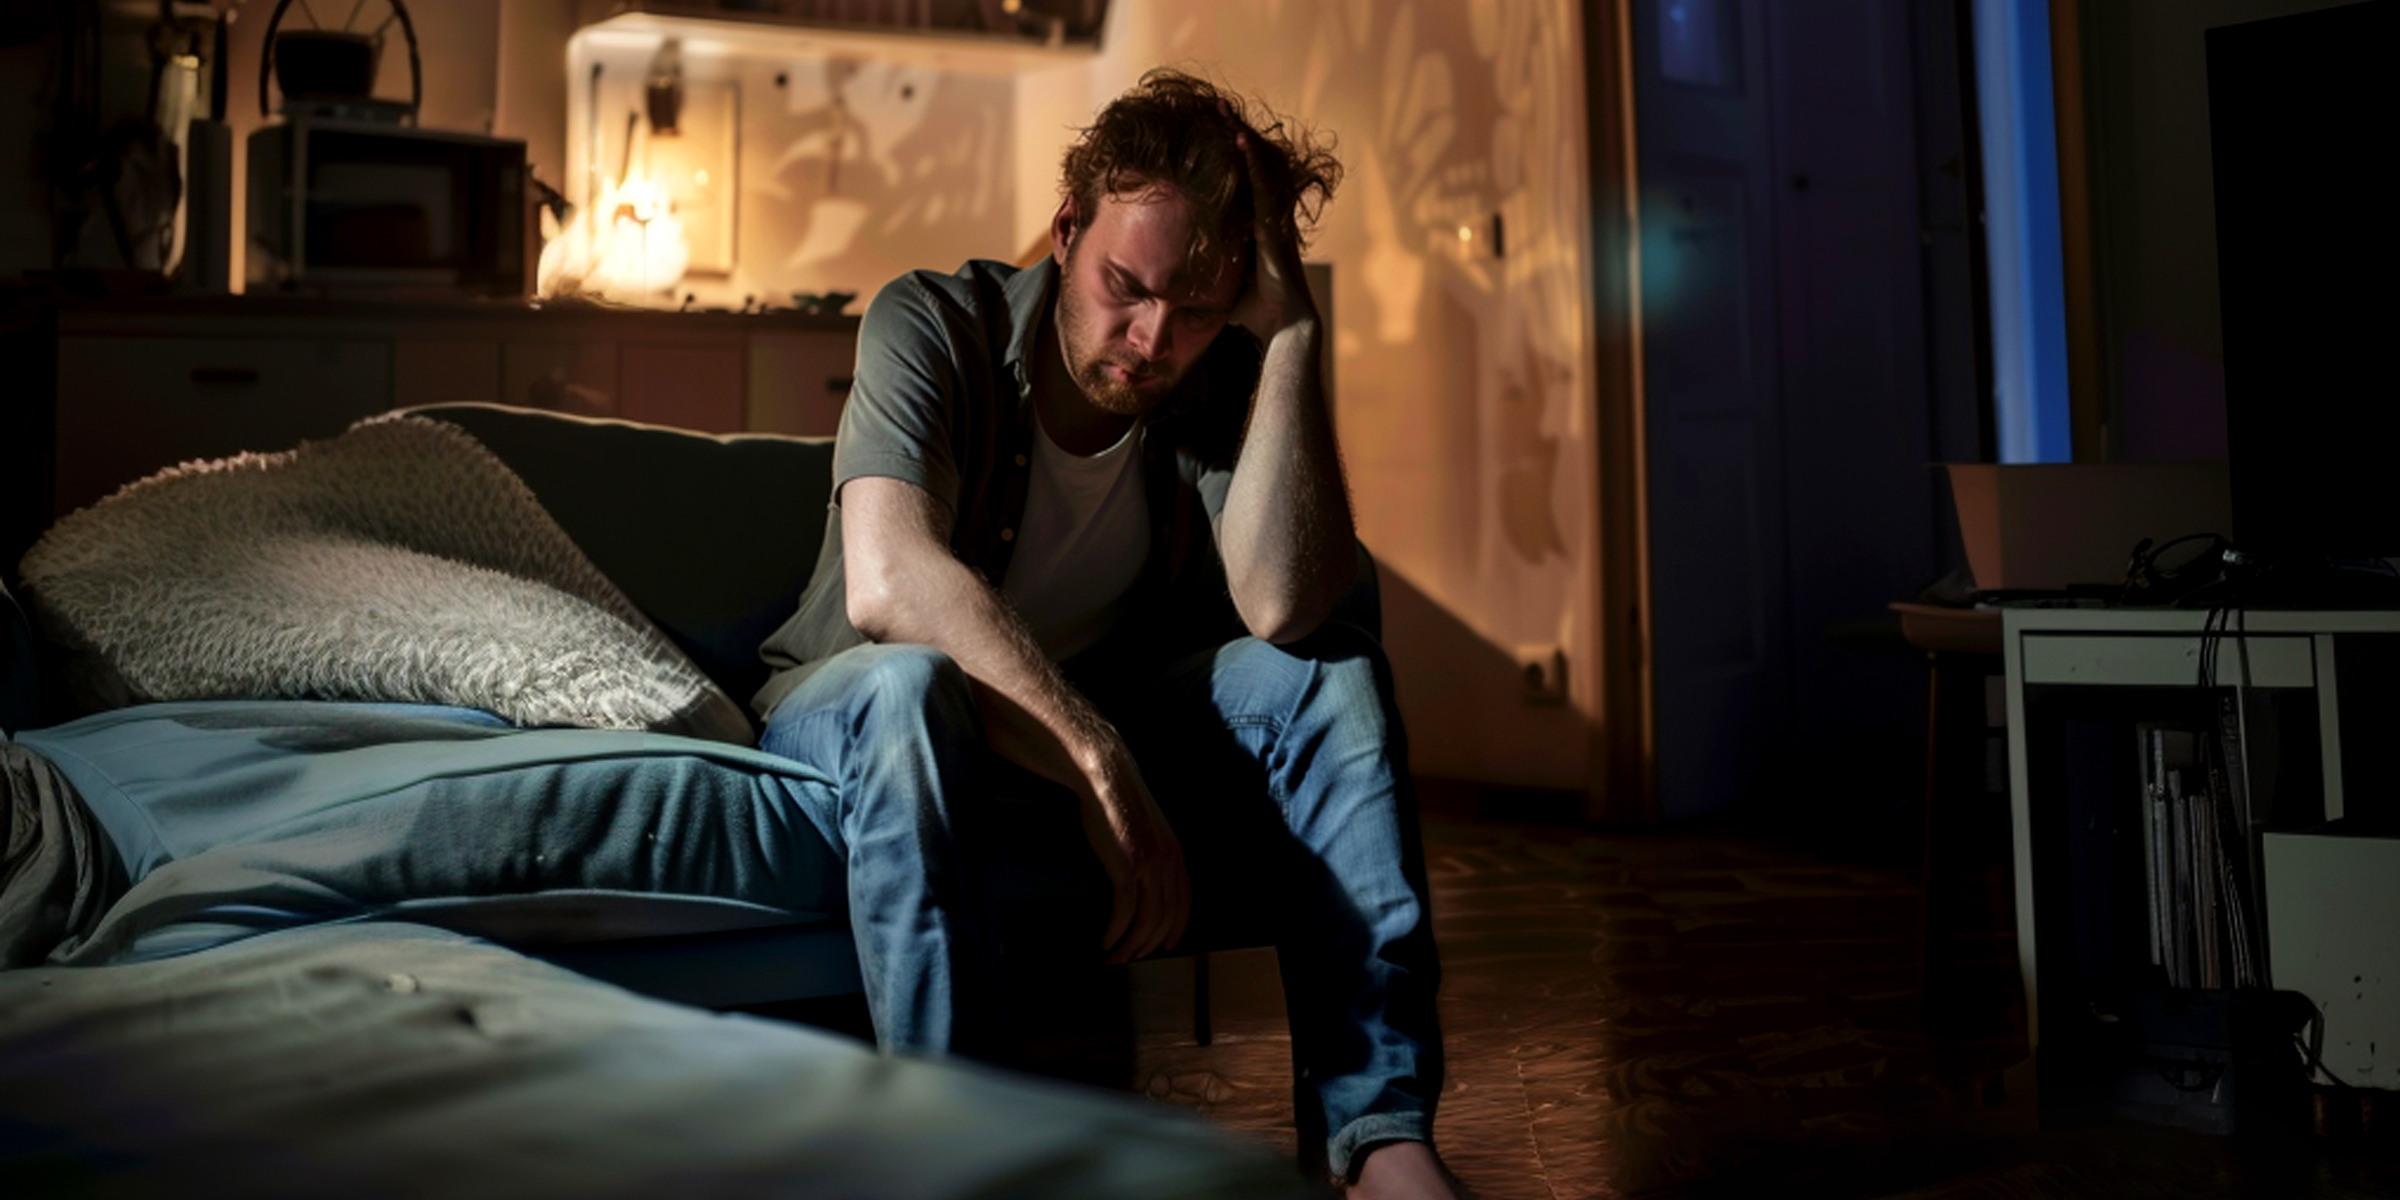 Un hombre angustiado sentado en una habitación oscura | Fuente: Midjourney